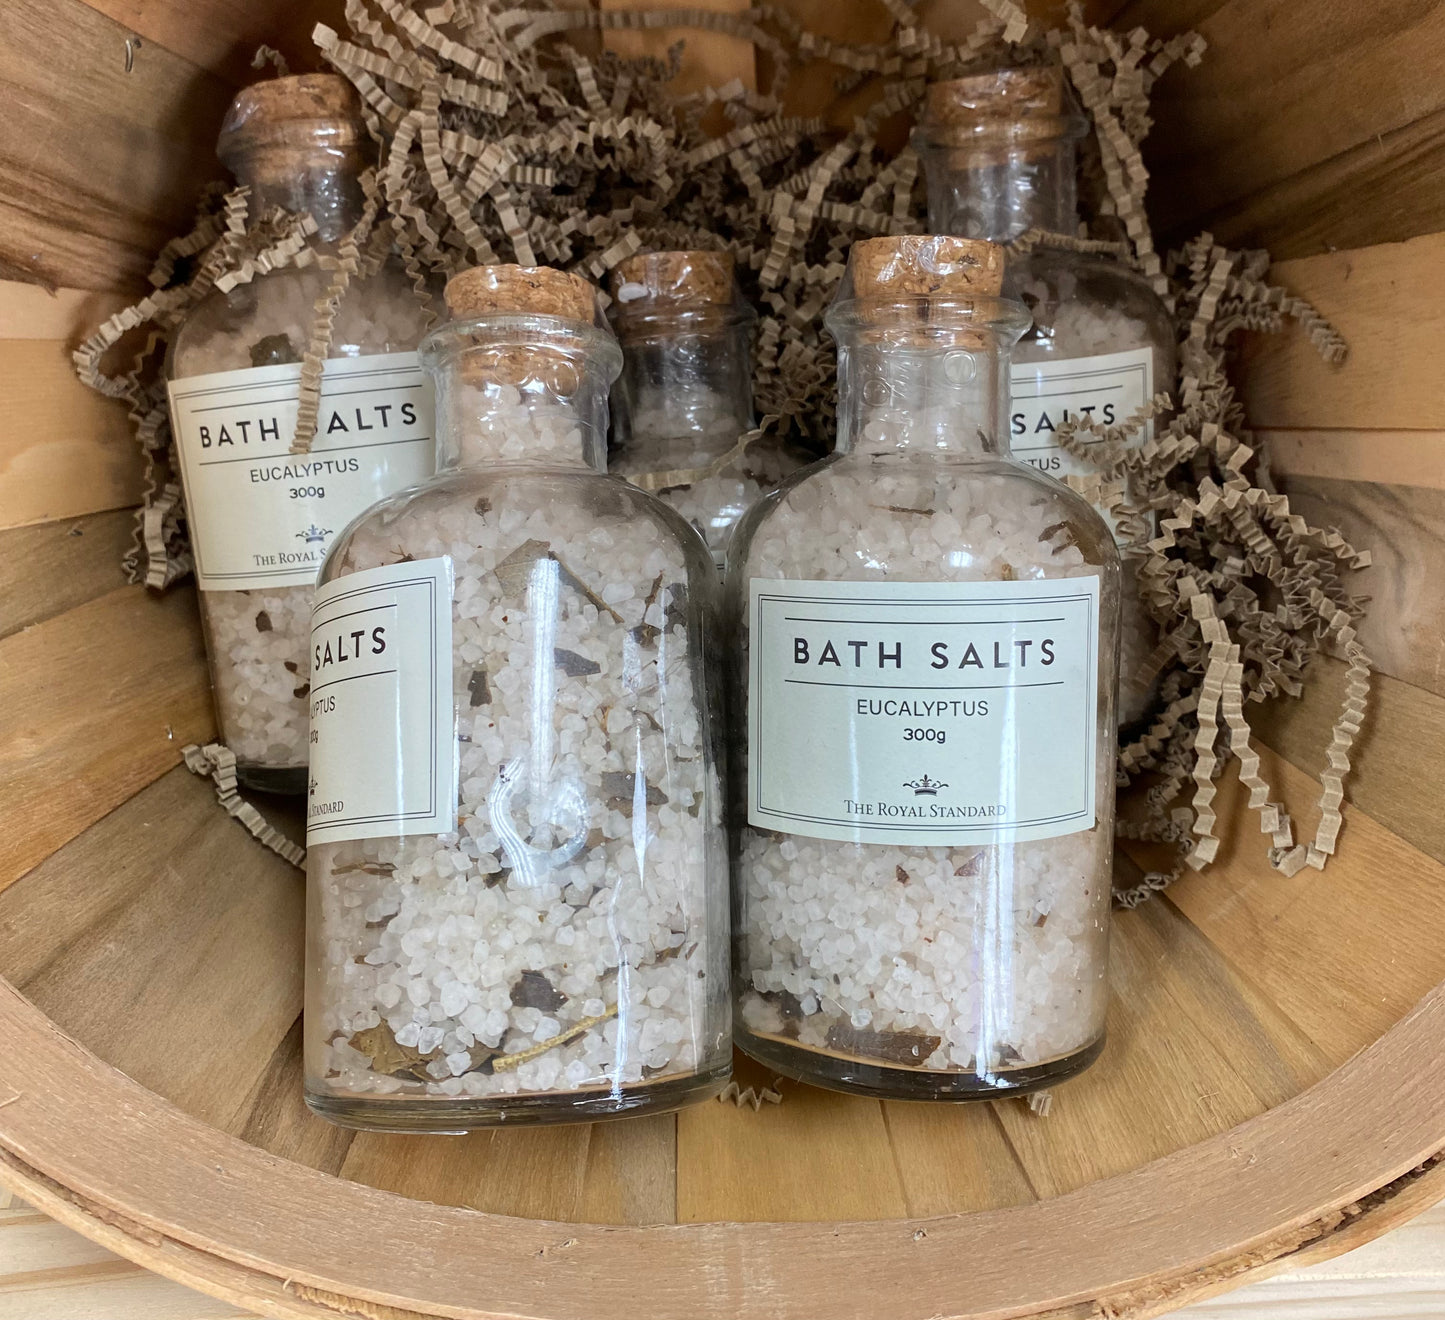 Bath & Body Products